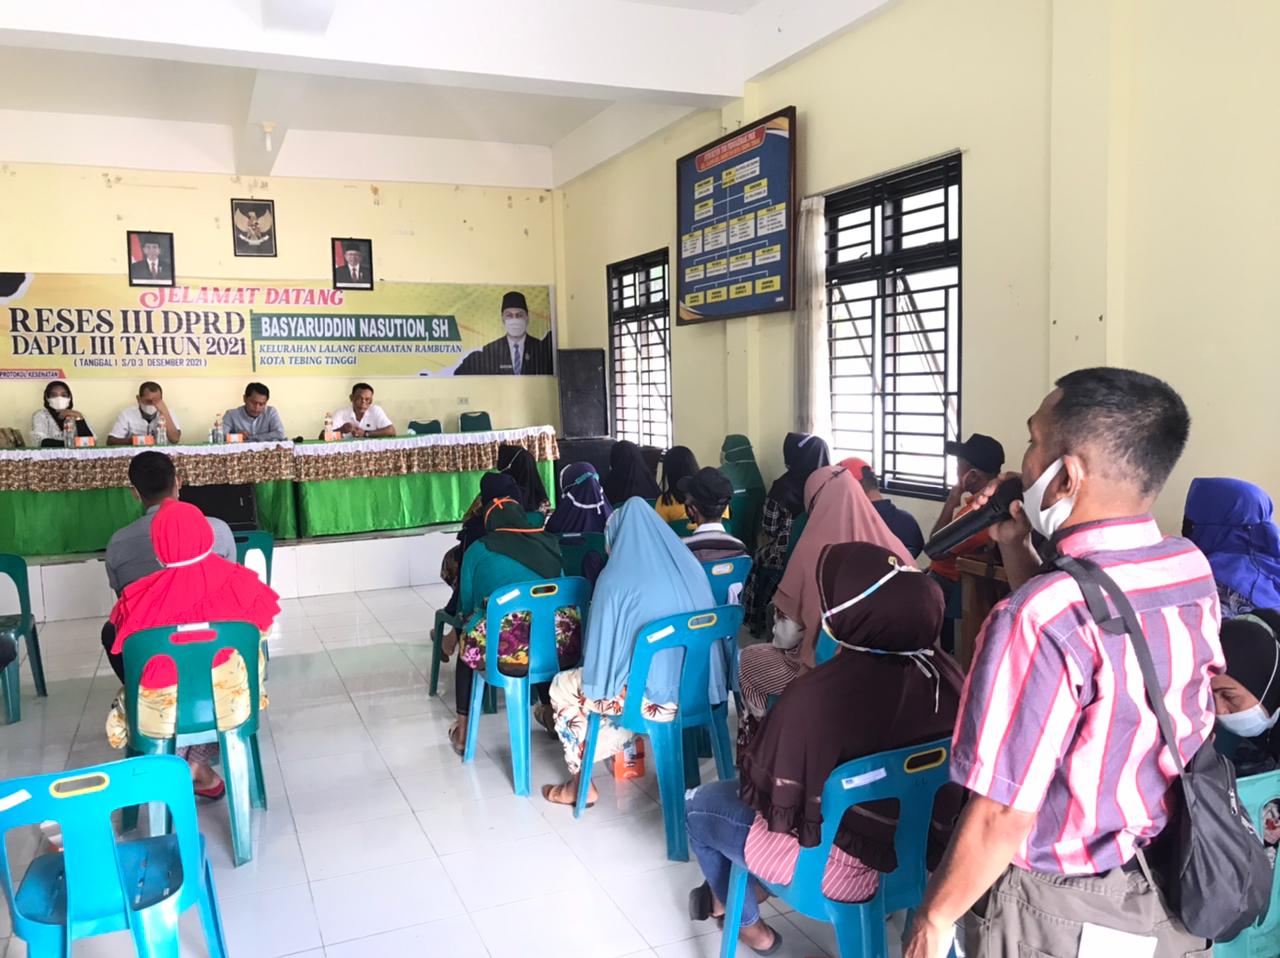 Tampung Aspirasi Masyarakat, Basyaruddin Nasution Laksanakan Reses Dapil III Di Kelurahan Lalang